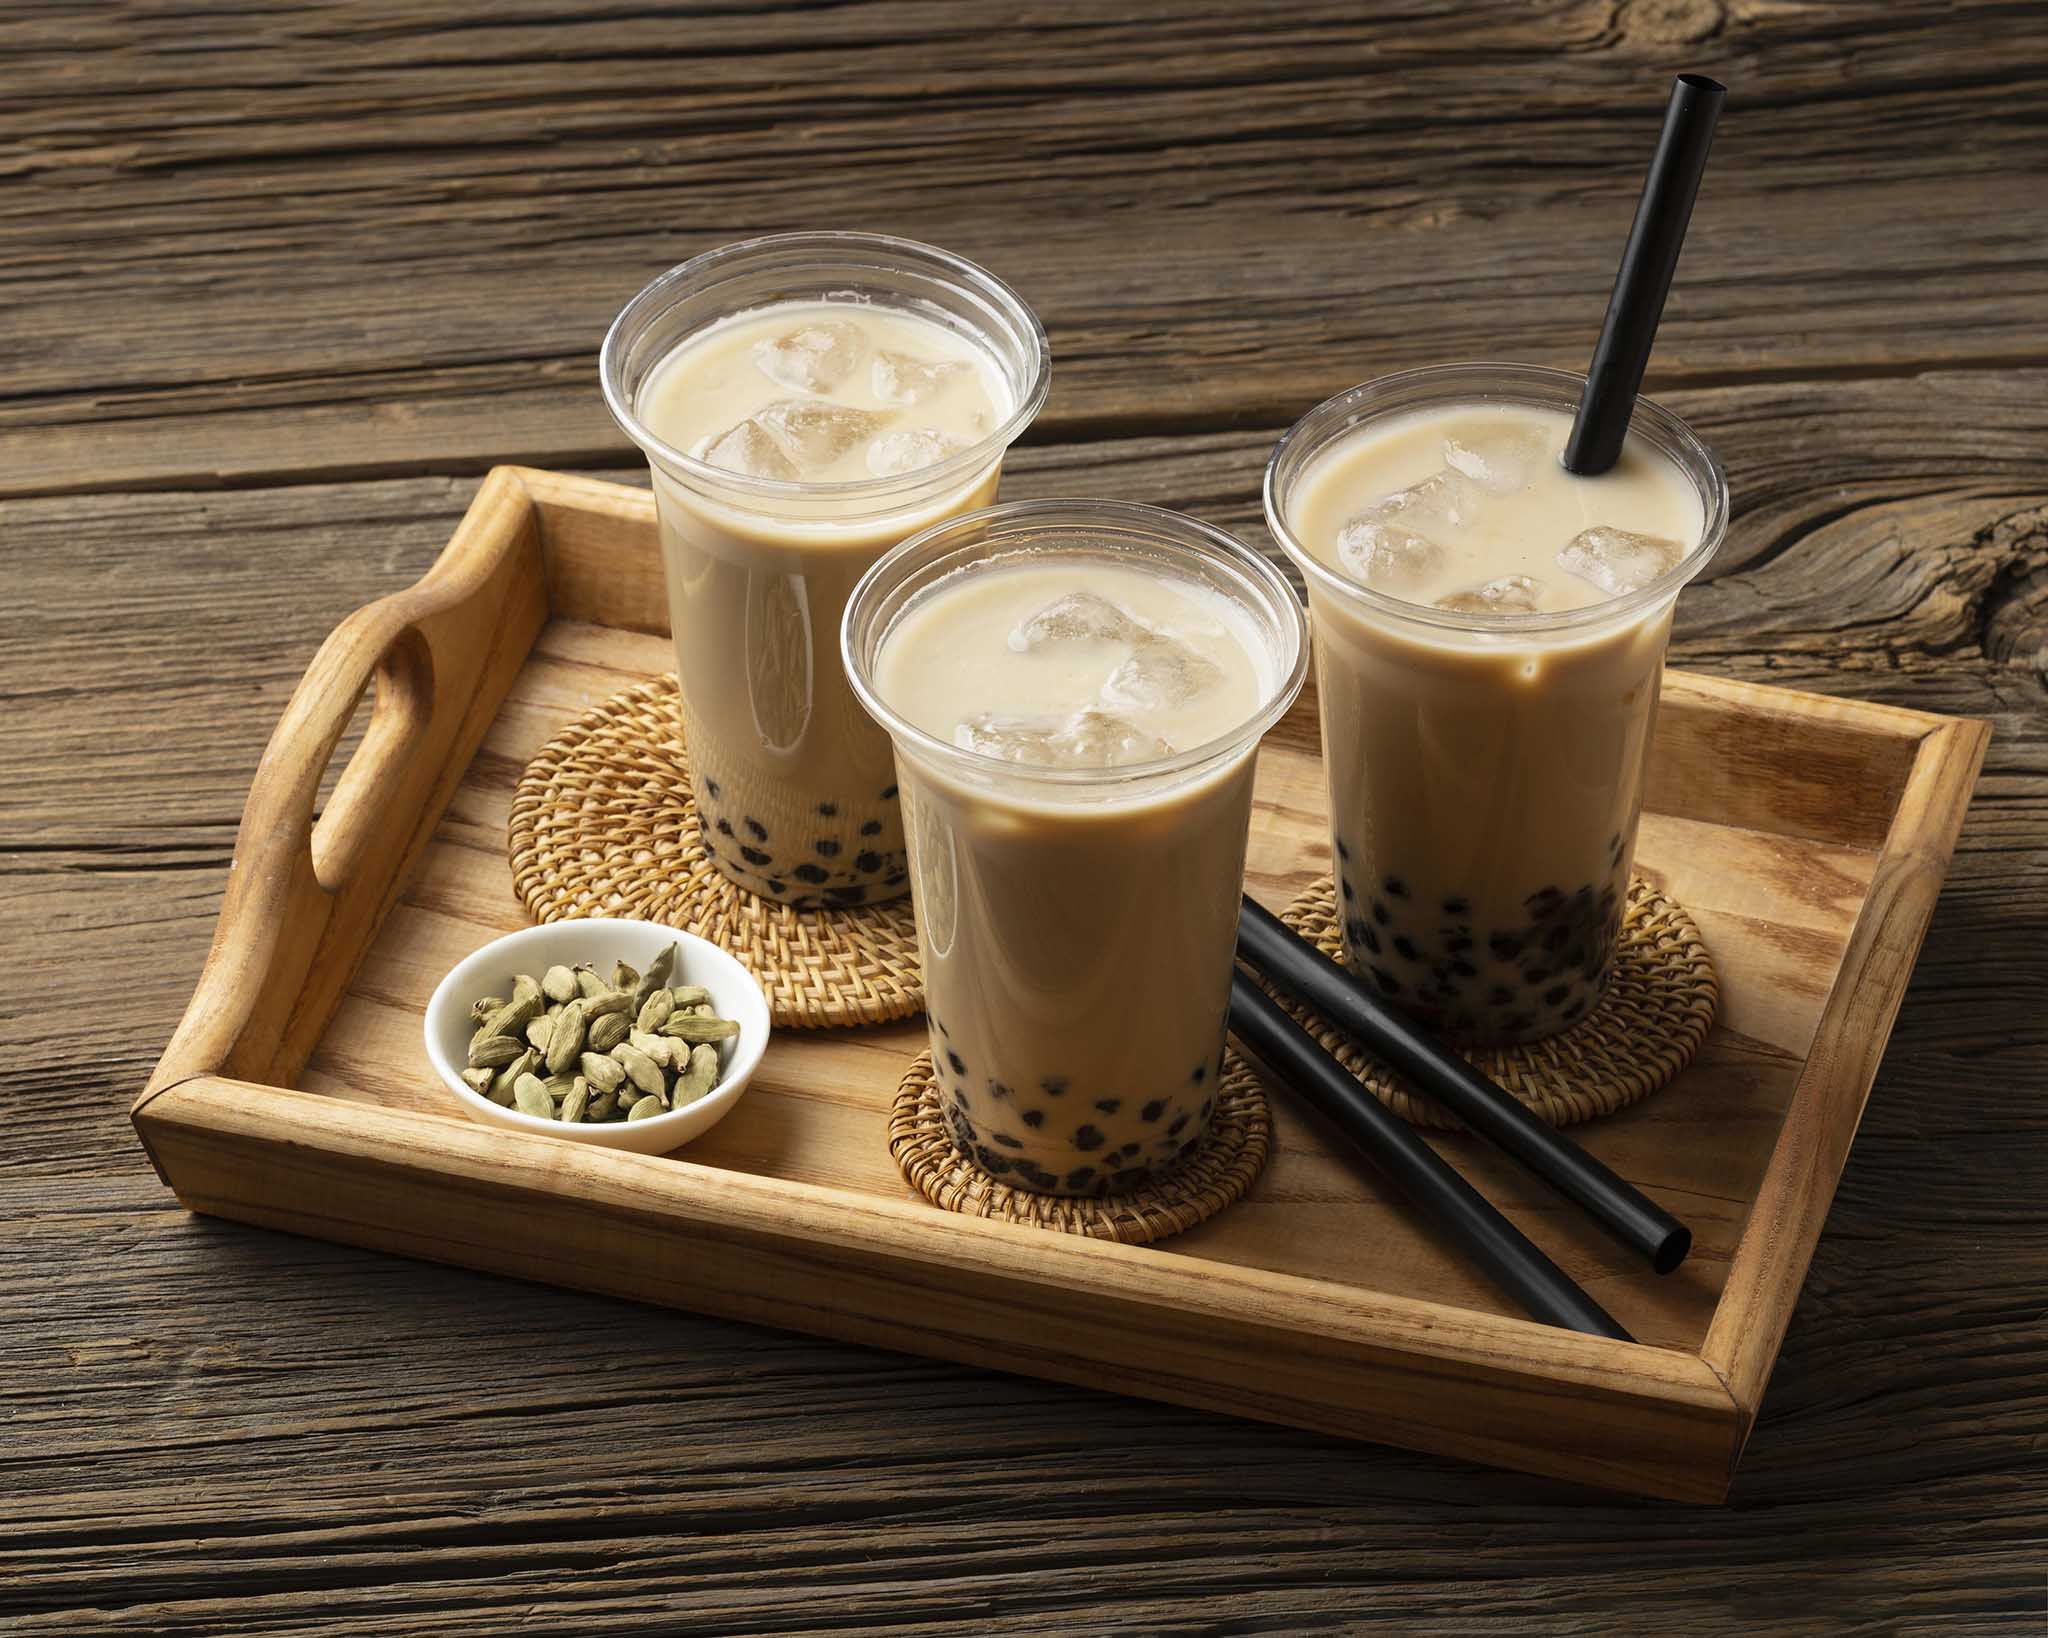 Câu chuyện trà sữa “Made in Vietnam”